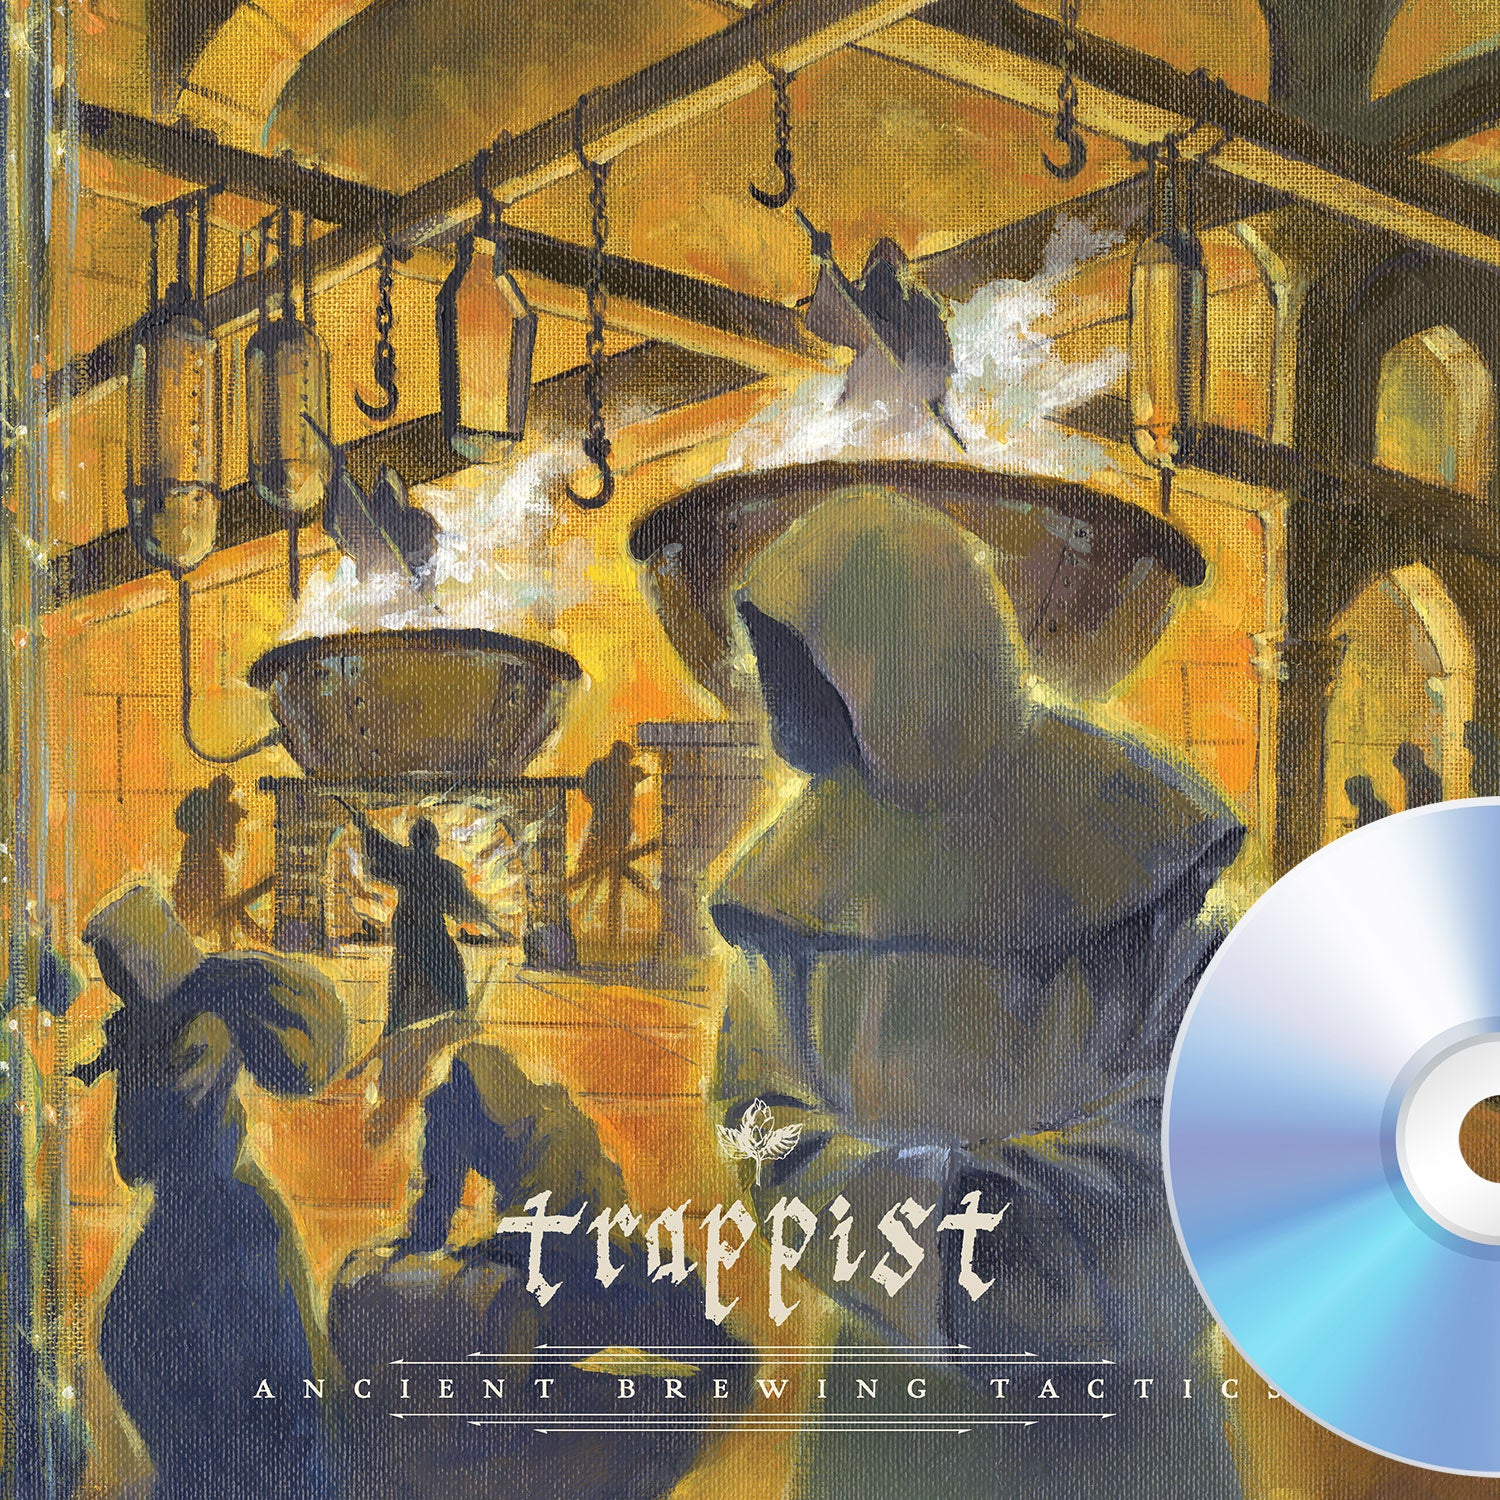 Trappist "Ancient Brewing Tactics" CD